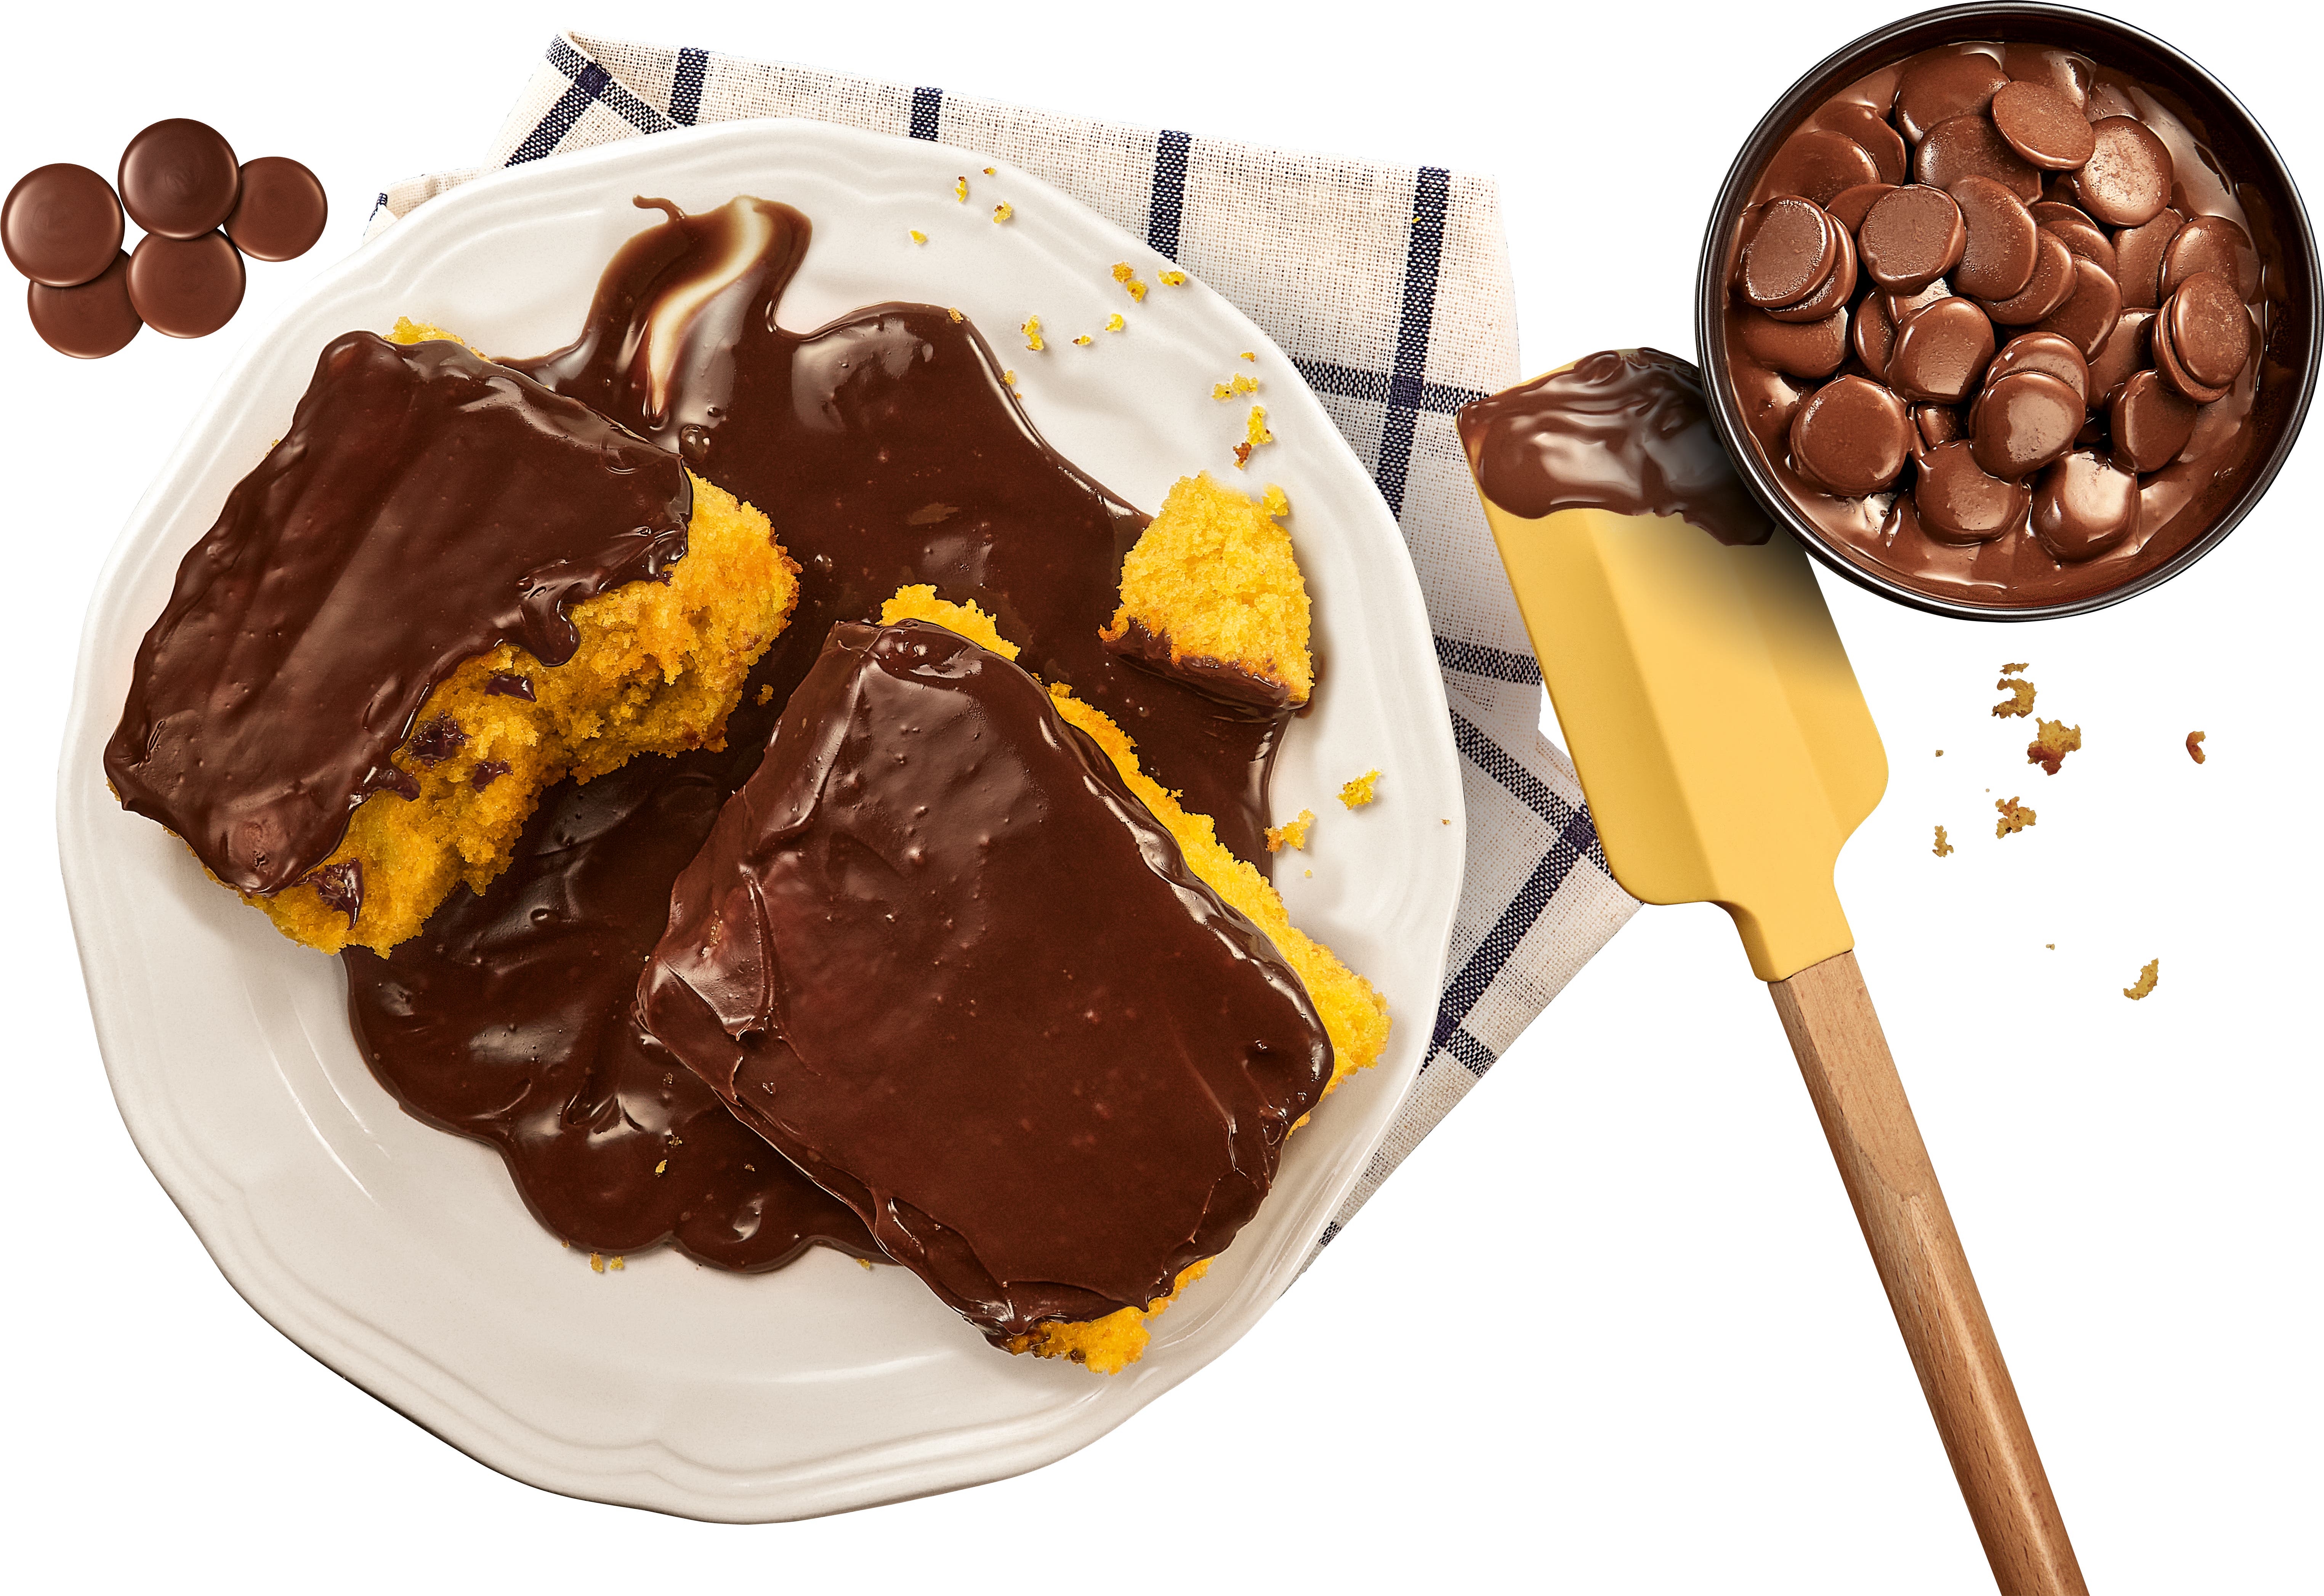 Dois pedaços de bolo de cenoura com cobertura de chocolate em um prato branco, e uma tigela de gotas de chocolate Hershey's.